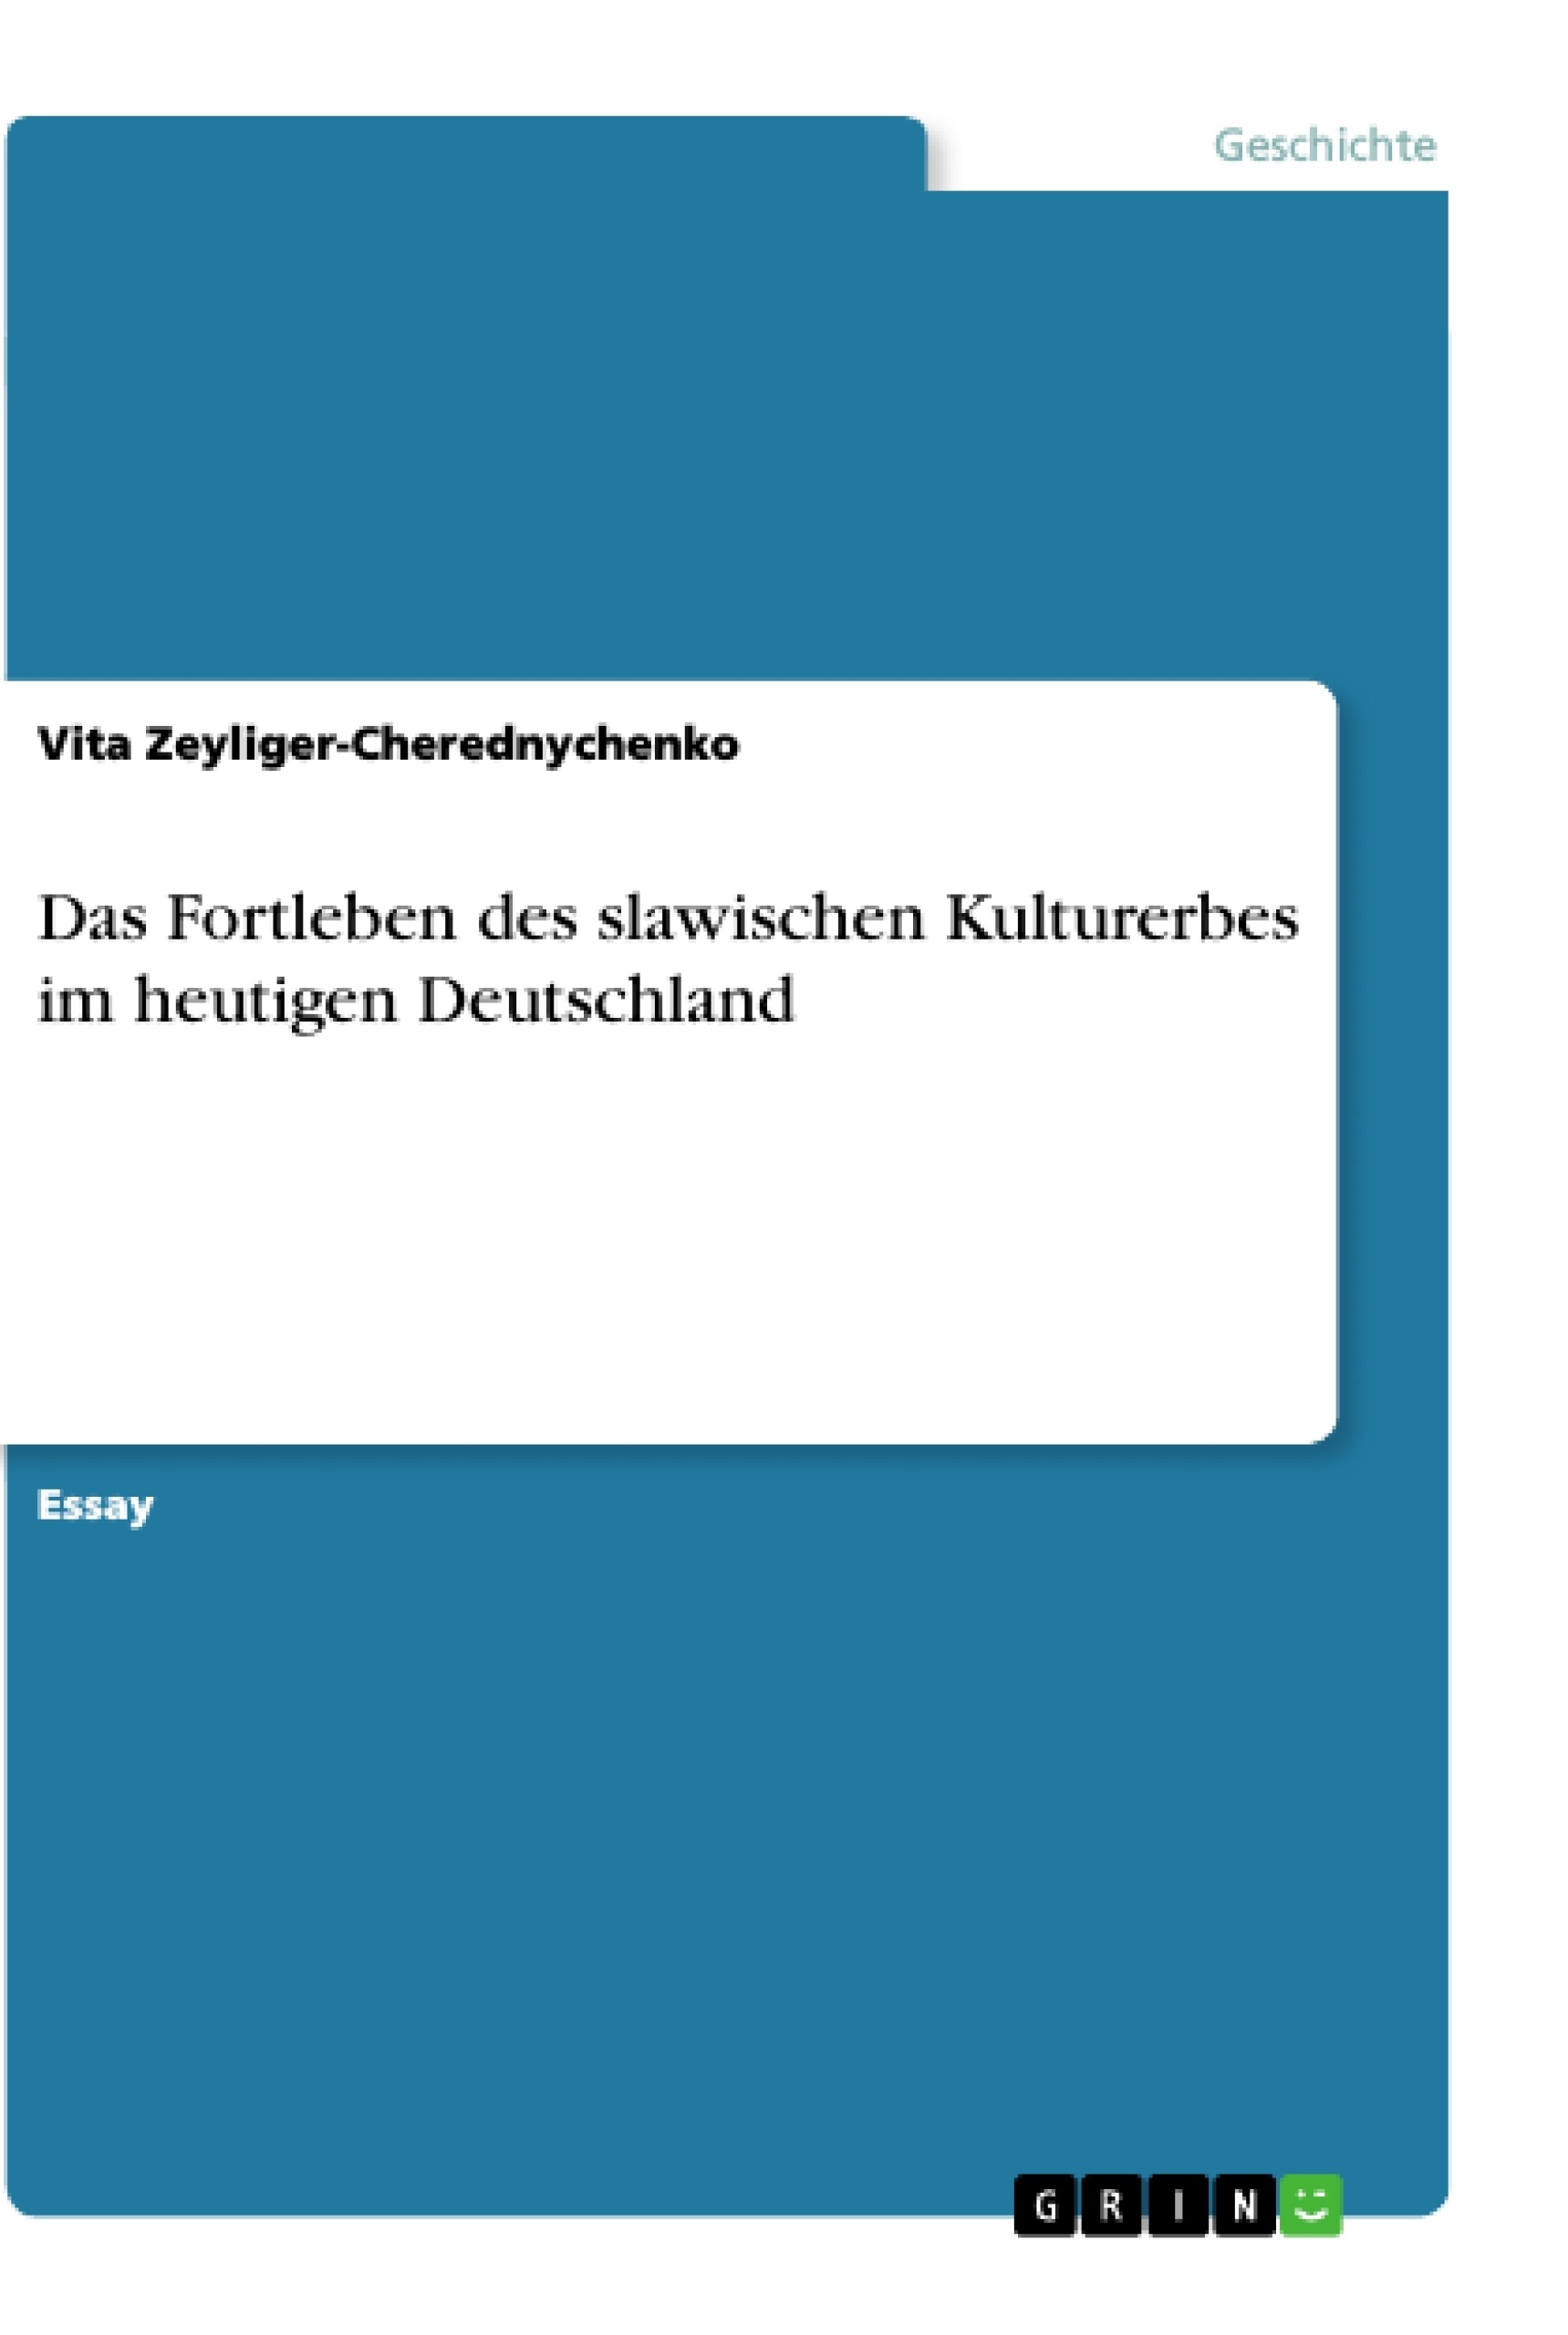 Title: Das Fortleben des slawischen Kulturerbes im heutigen Deutschland